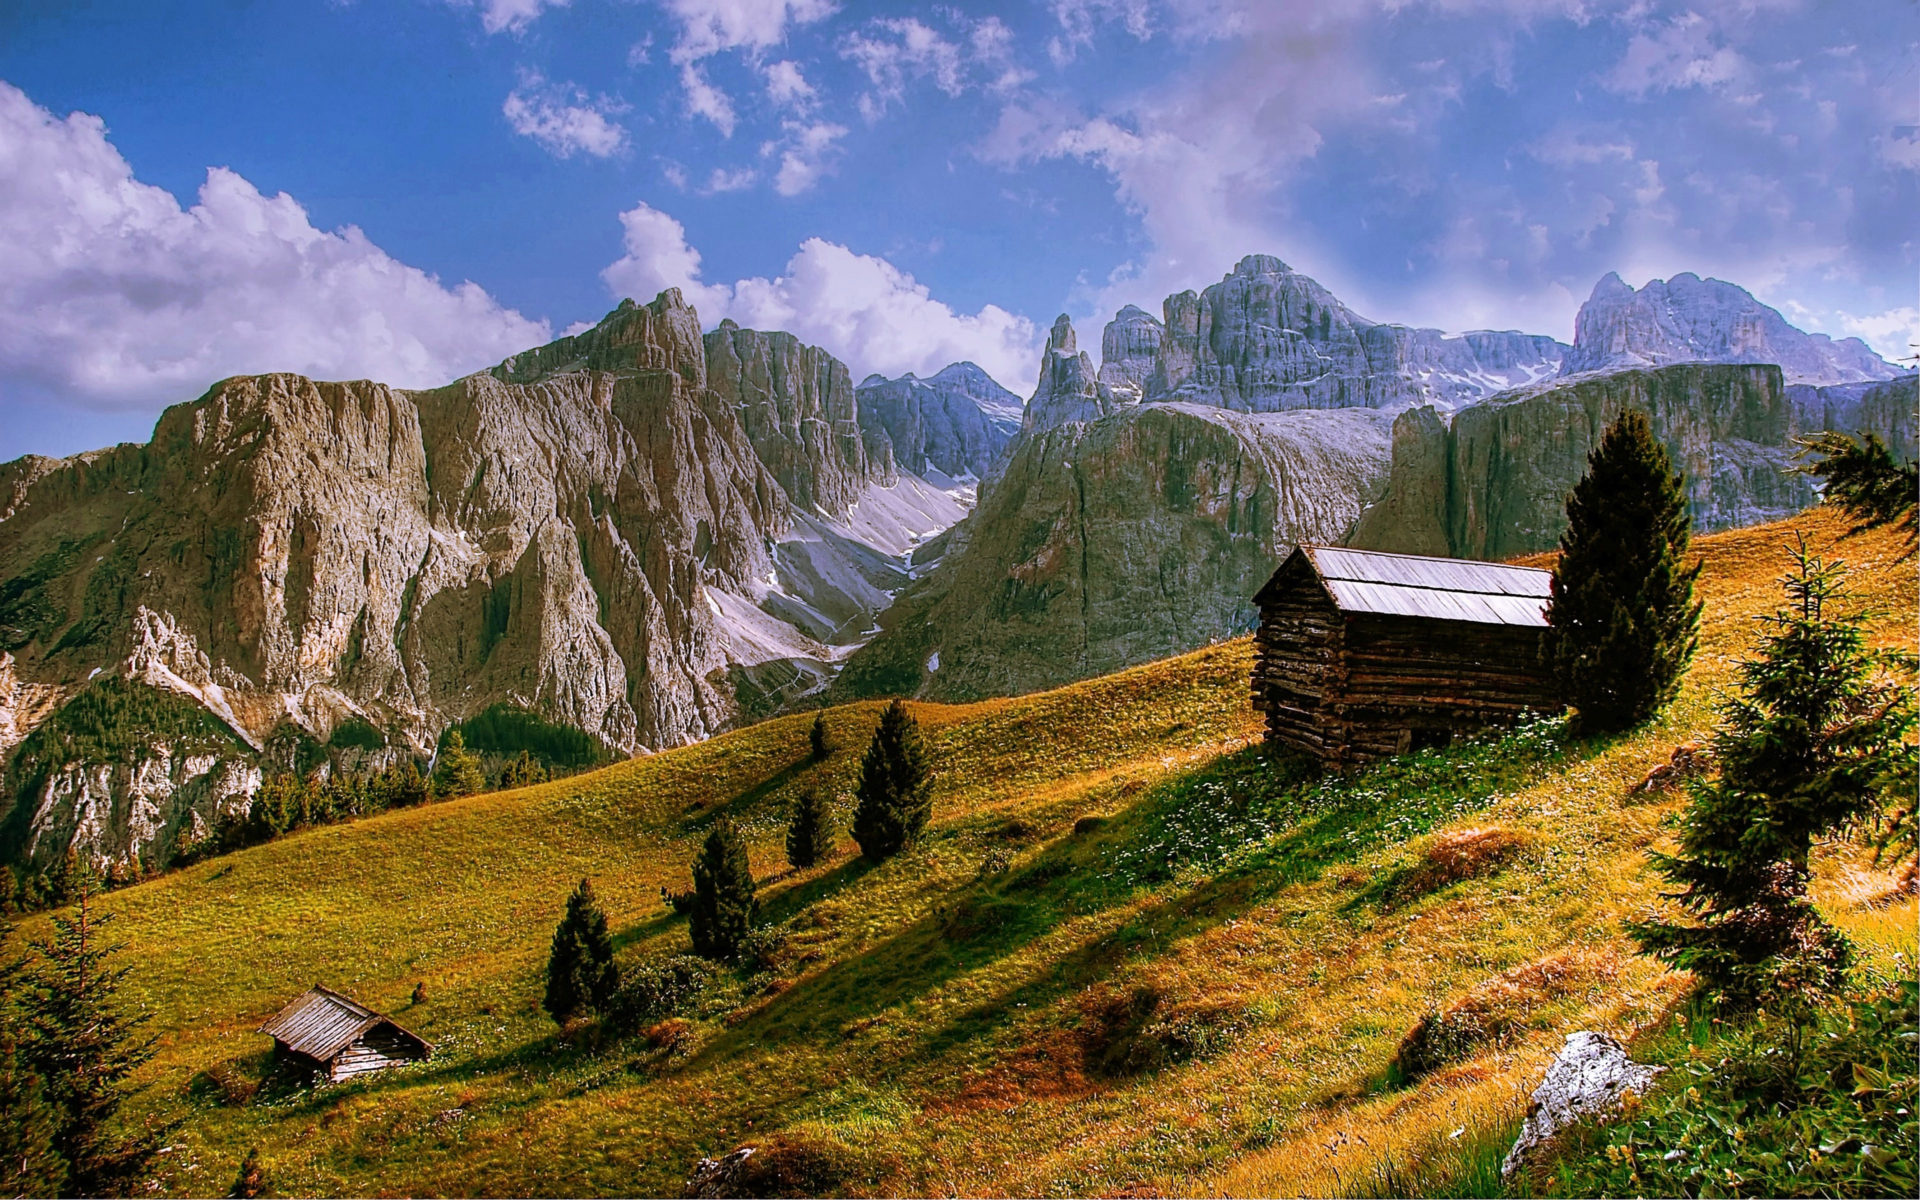 HD wallpaper, Dolomites Scenery, 1920X1200 Hd Desktop, Desktop Hd Trentino Dolomites Wallpaper, Xfce Desktop, Beautiful Landscapes, Picture Eyecandy